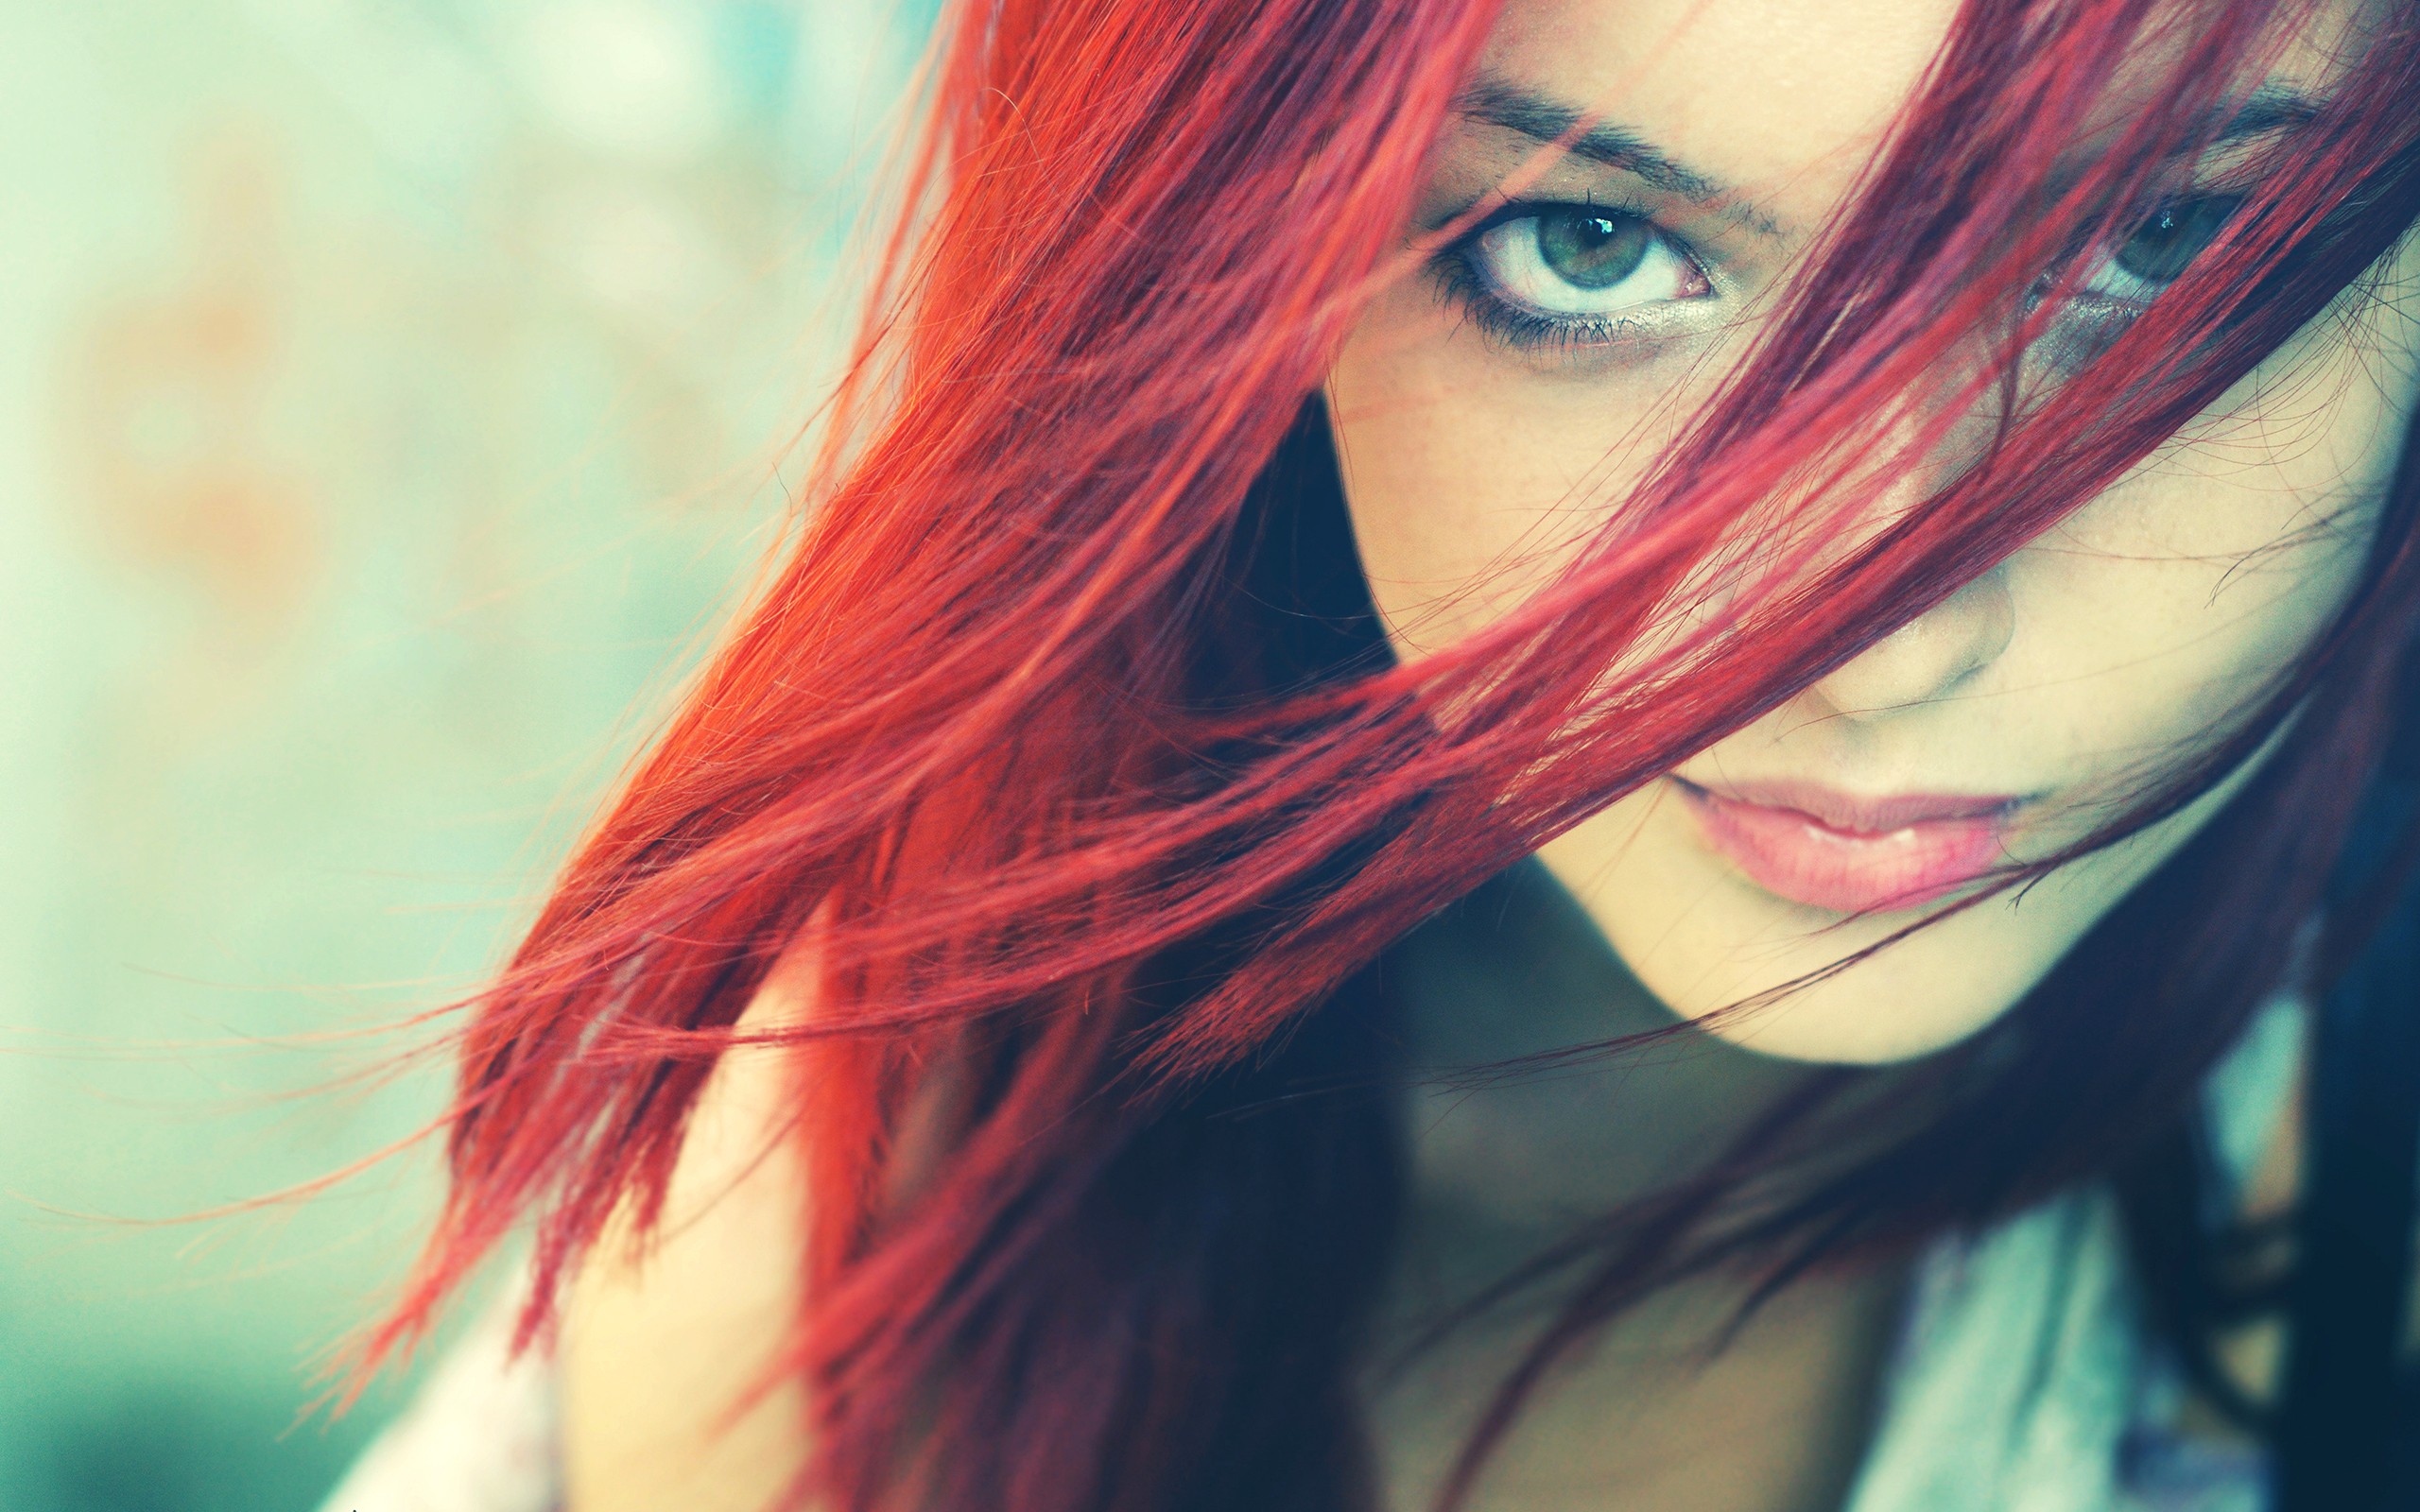 hair wallpaper hd,hair,face,red hair,red,lip